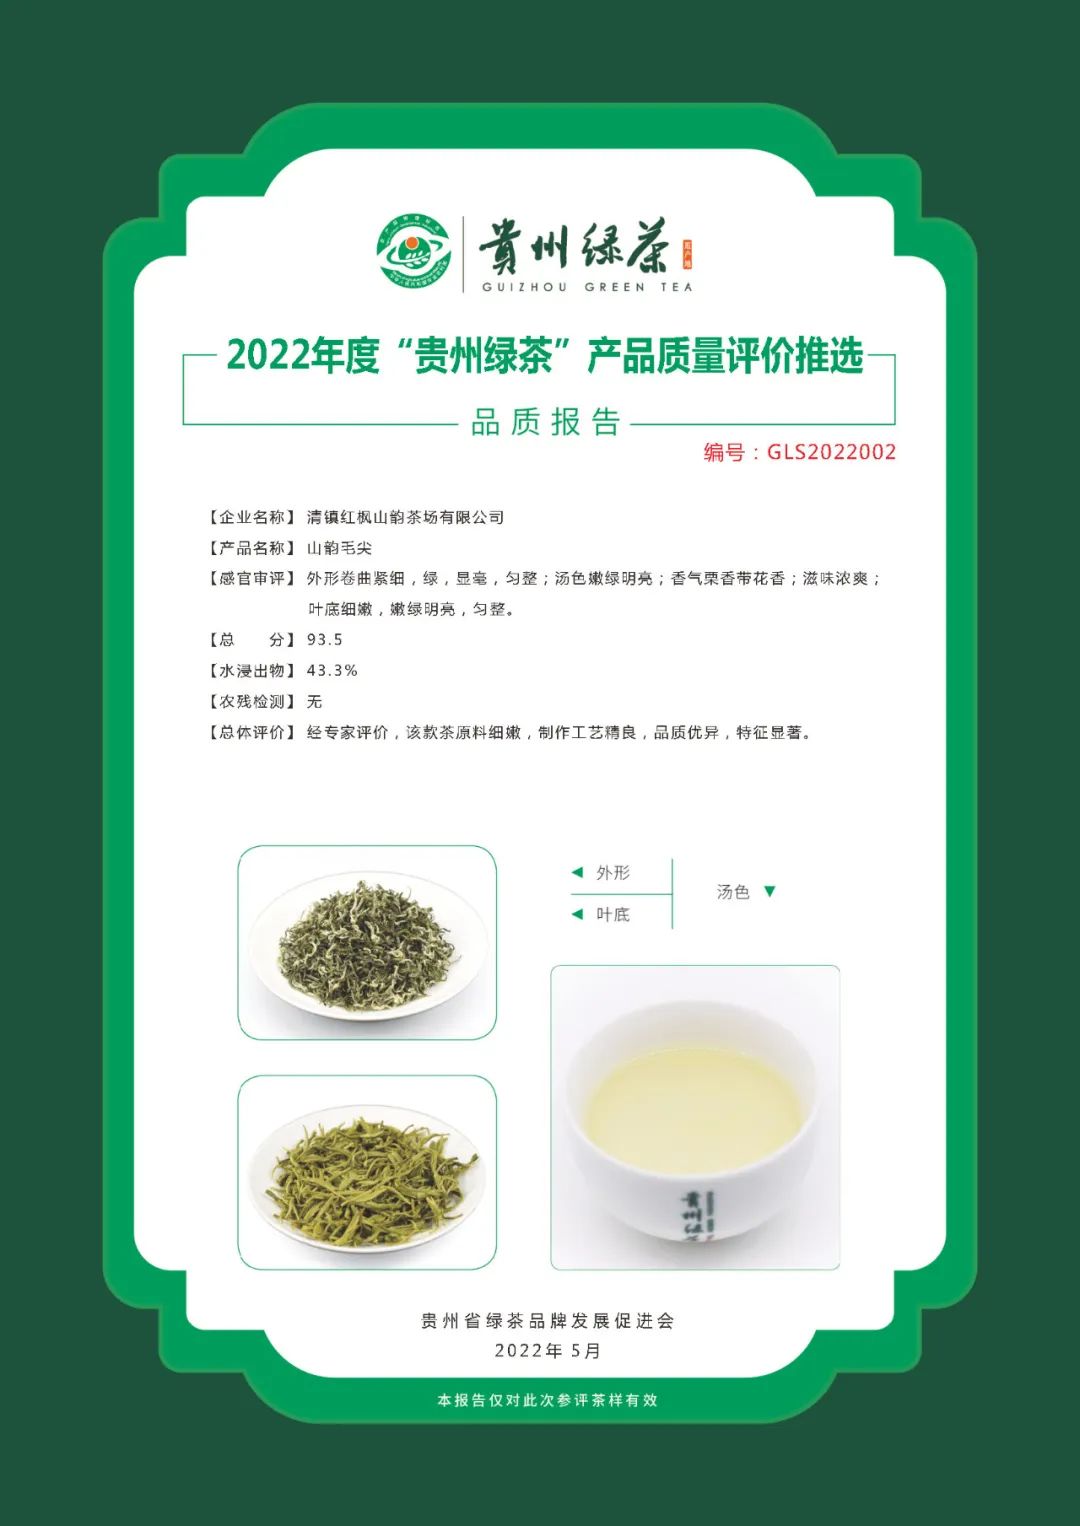 报名倒计时丨2023年度“贵州绿茶”产品质量评价活动启动